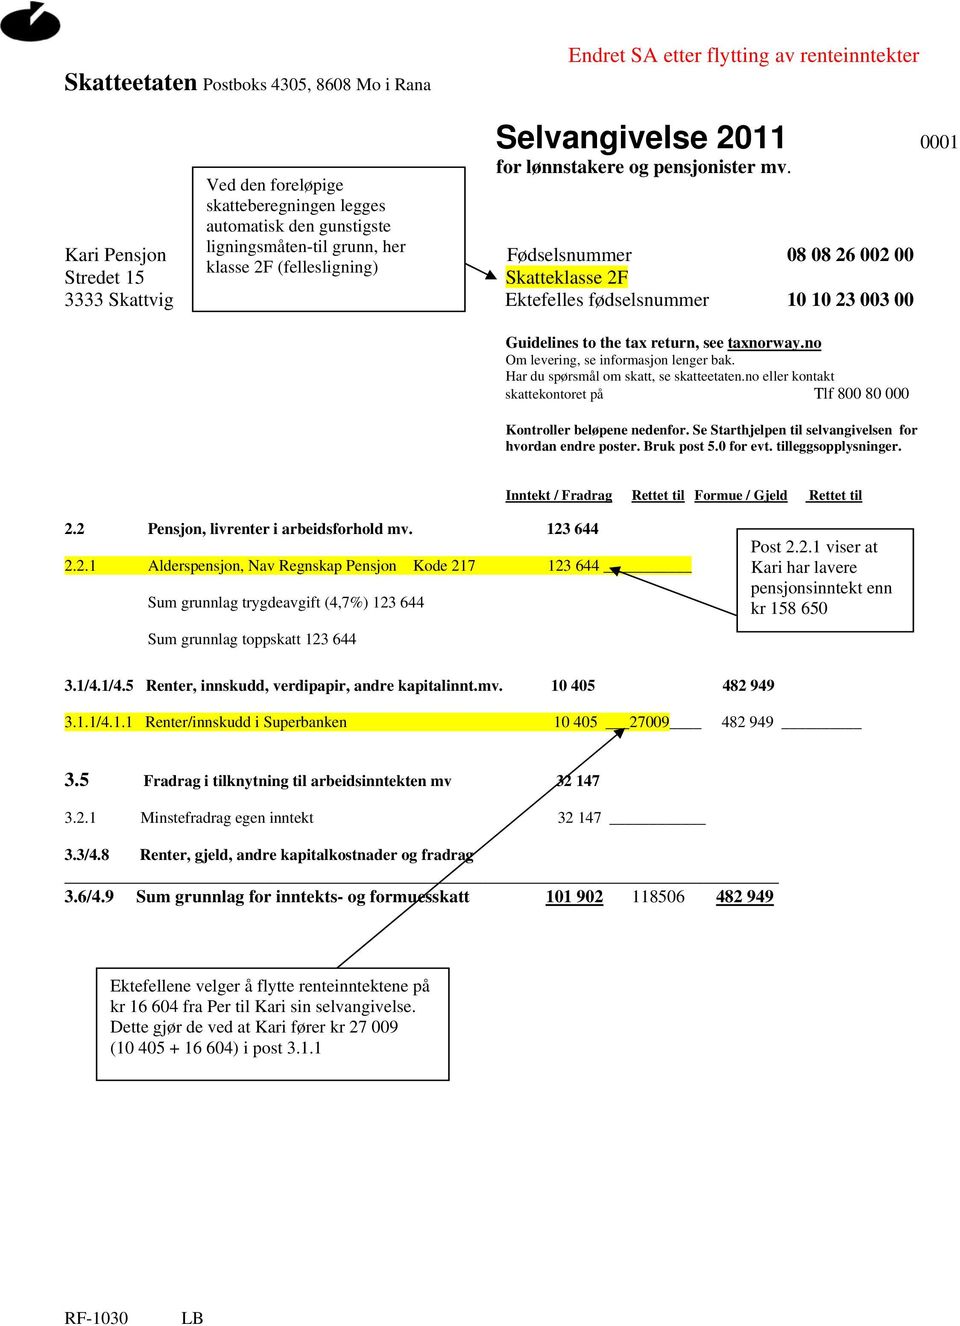 Skattvig Ektefelles fødselsnummer 10 10 23 003 00 Guidelines to the tax return, see taxnorway.no Om levering, se informasjon lenger bak. Har du spørsmål om skatt, se skatteetaten.